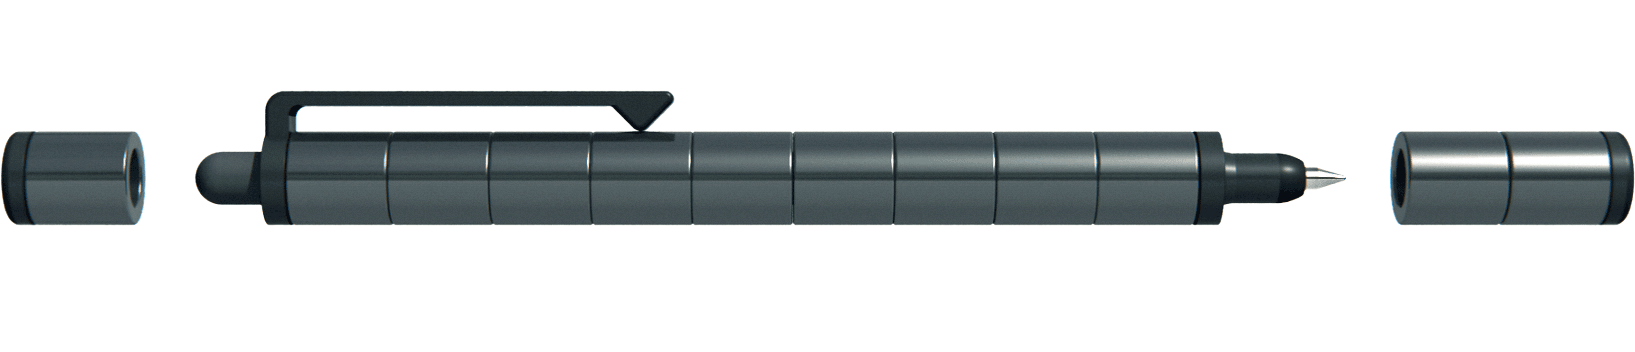 POLAR Pen Gun Metal